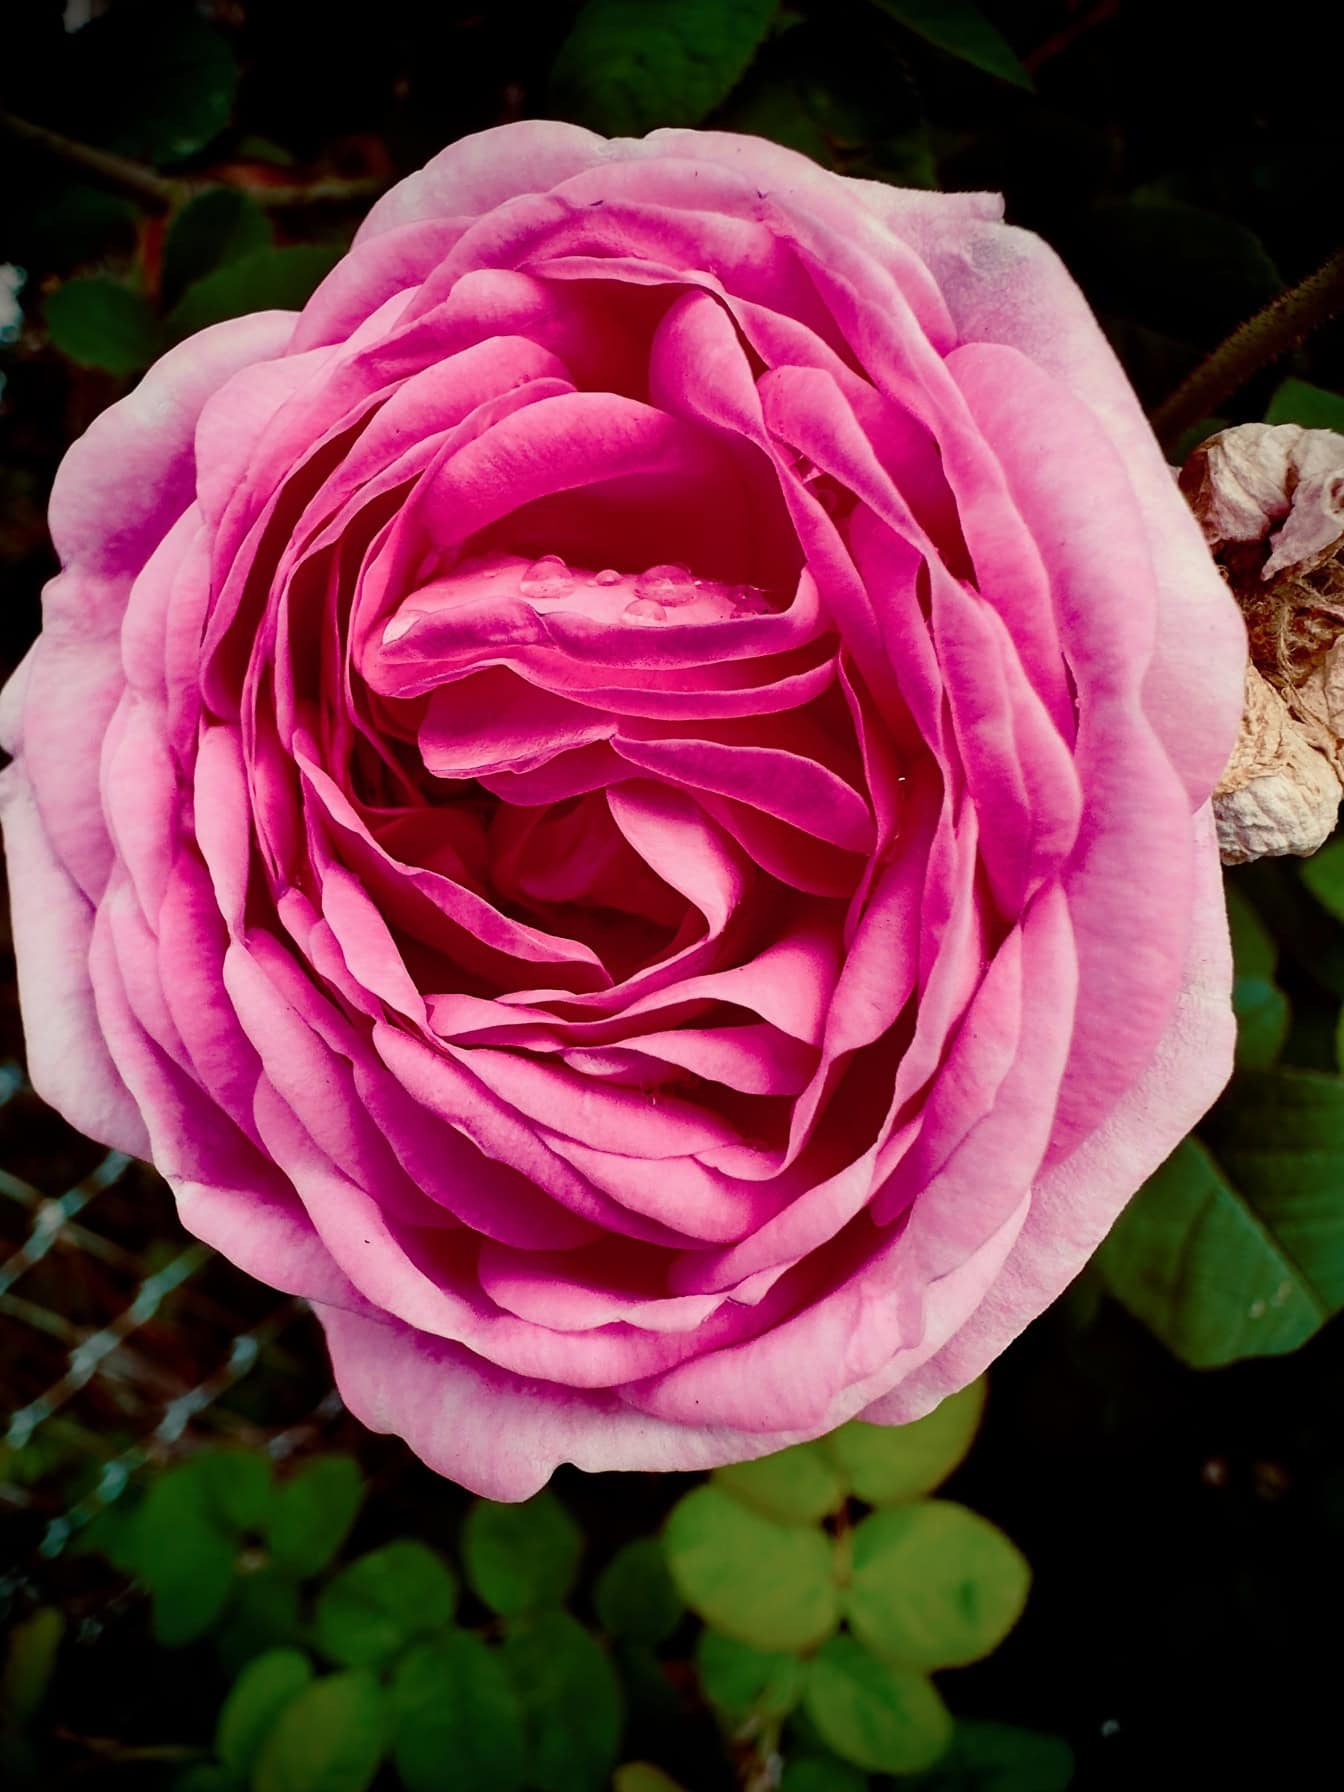 Primer plano de una hermosa rosa inglesa con gotas de rocío en pétalos